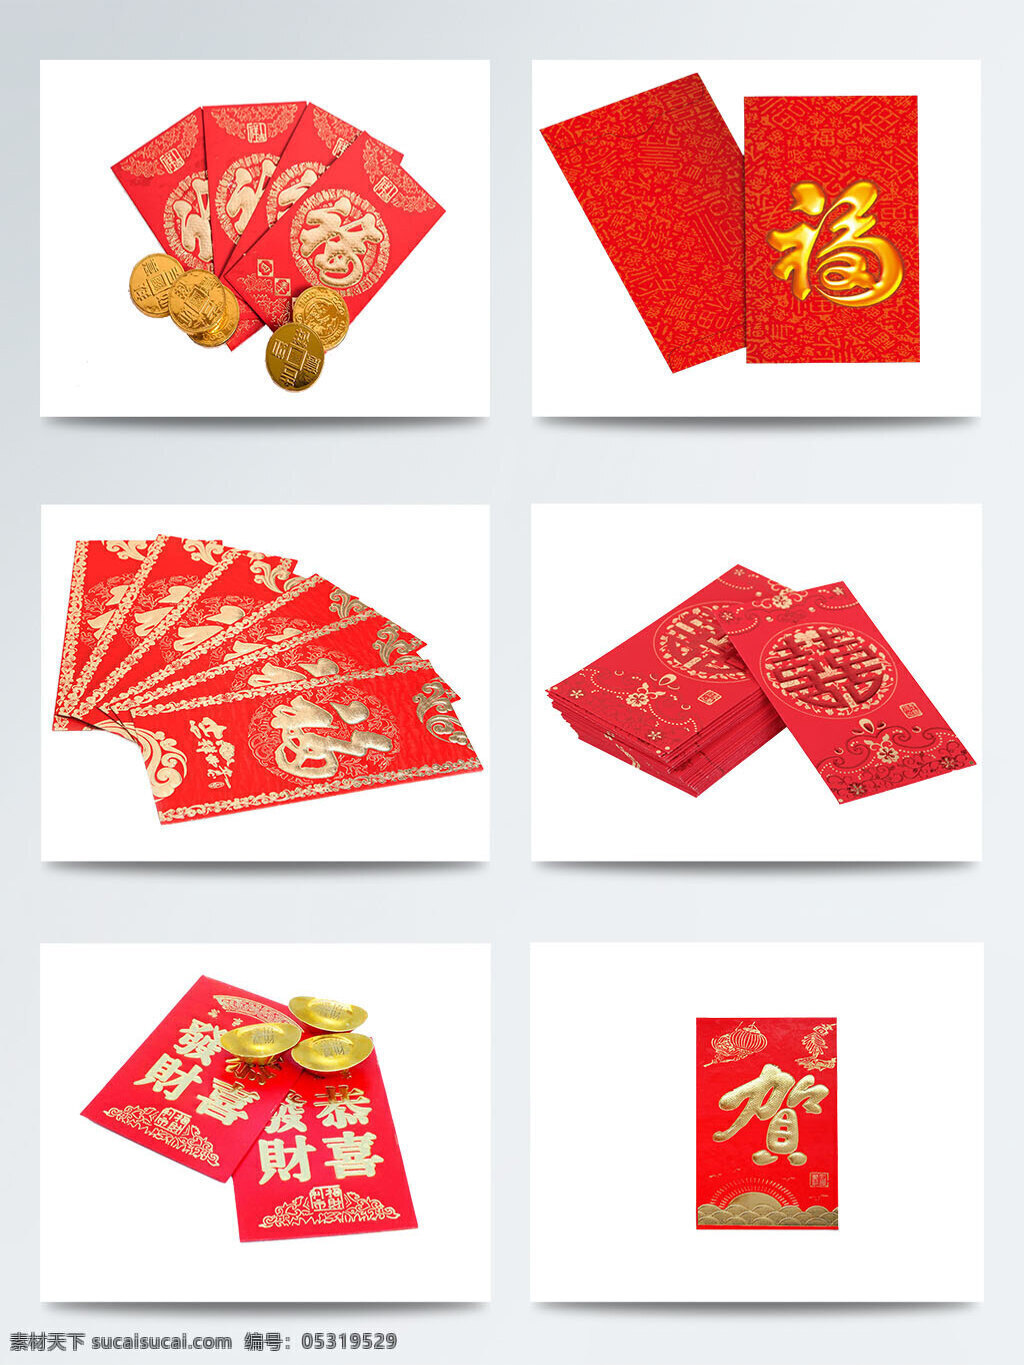 中国 风 红包 大全 拜年 除夕 传统习俗 春节 狗年 过年 新年 中国风 祝福